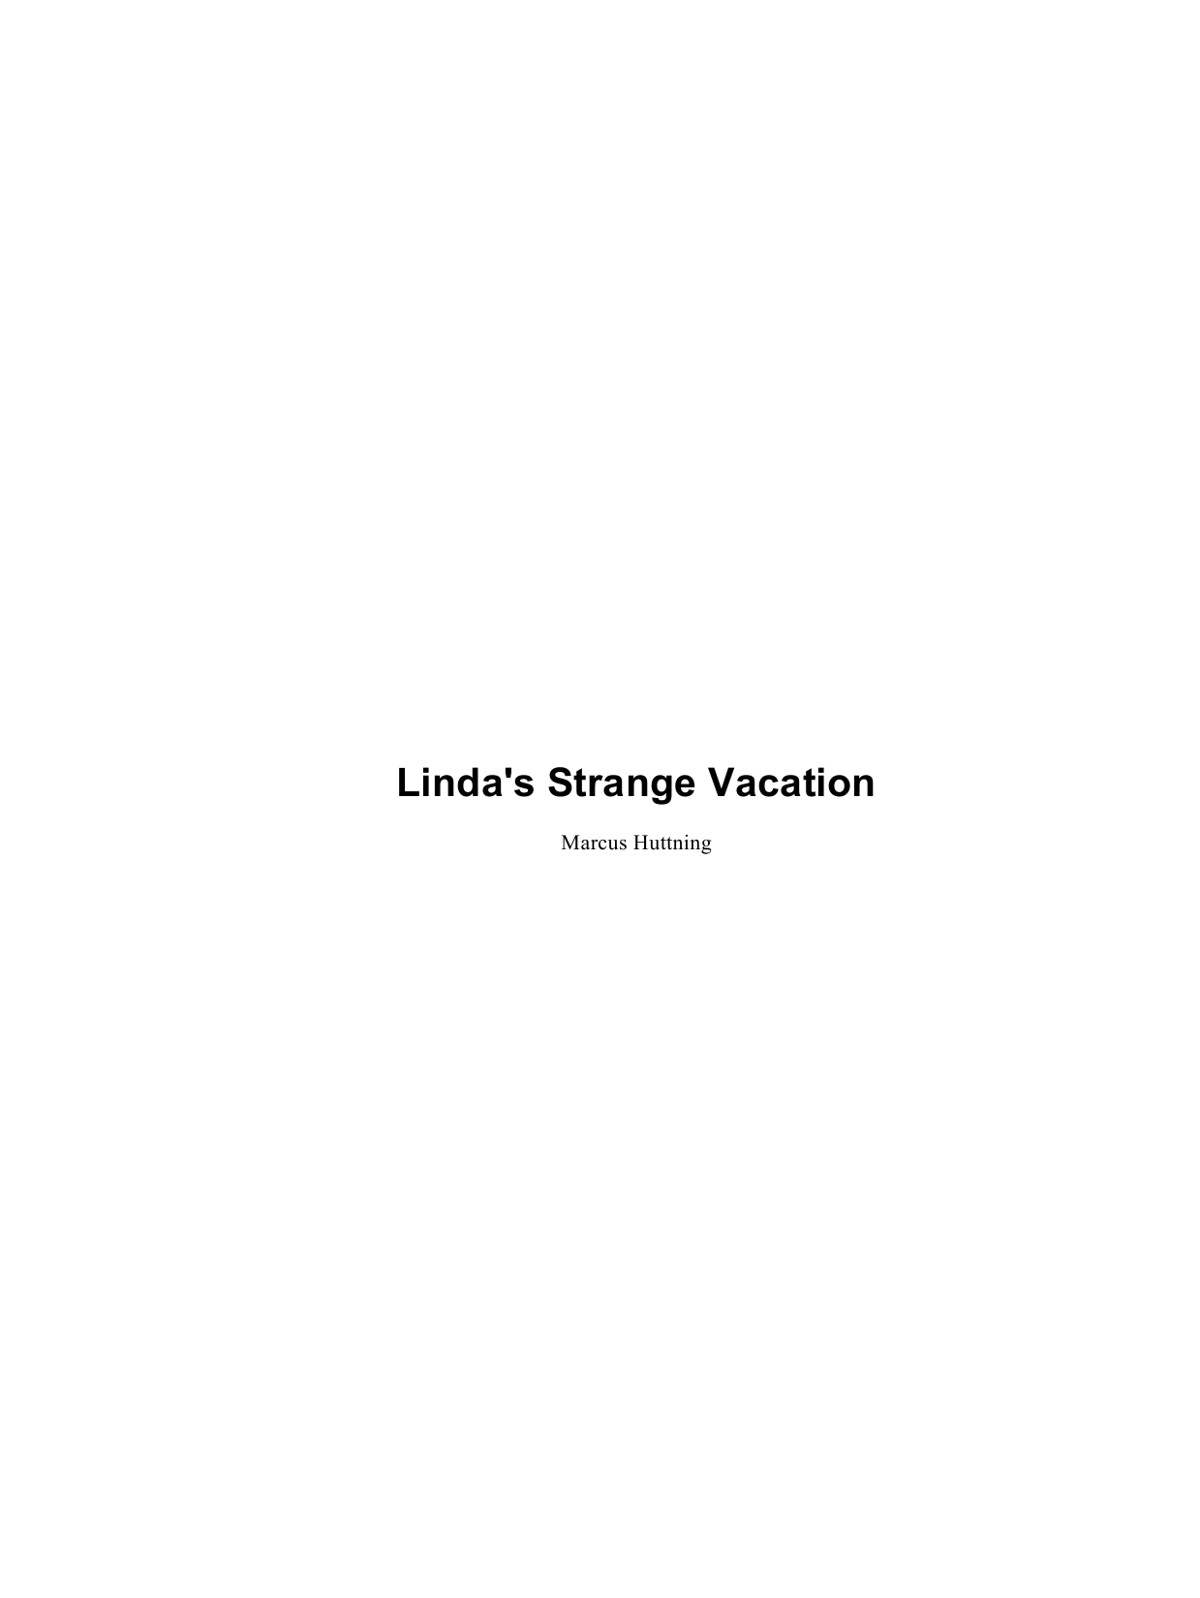 Huttning Marcus - Lindas strange vacation скачать бесплатно